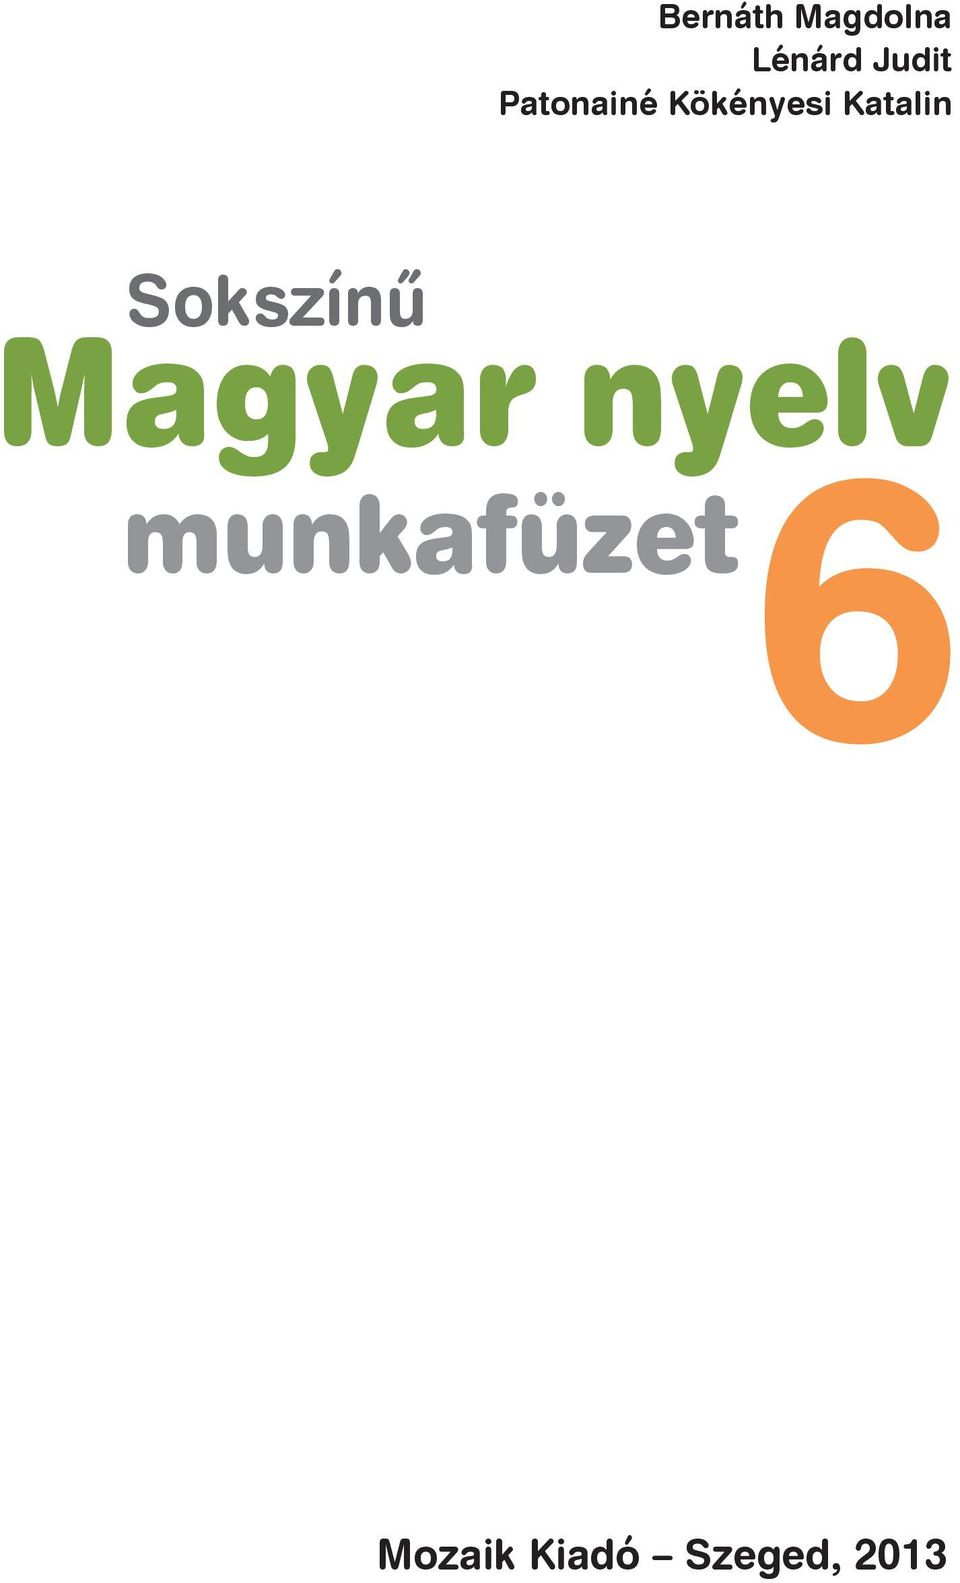 Sokszínû Magyar nyelv